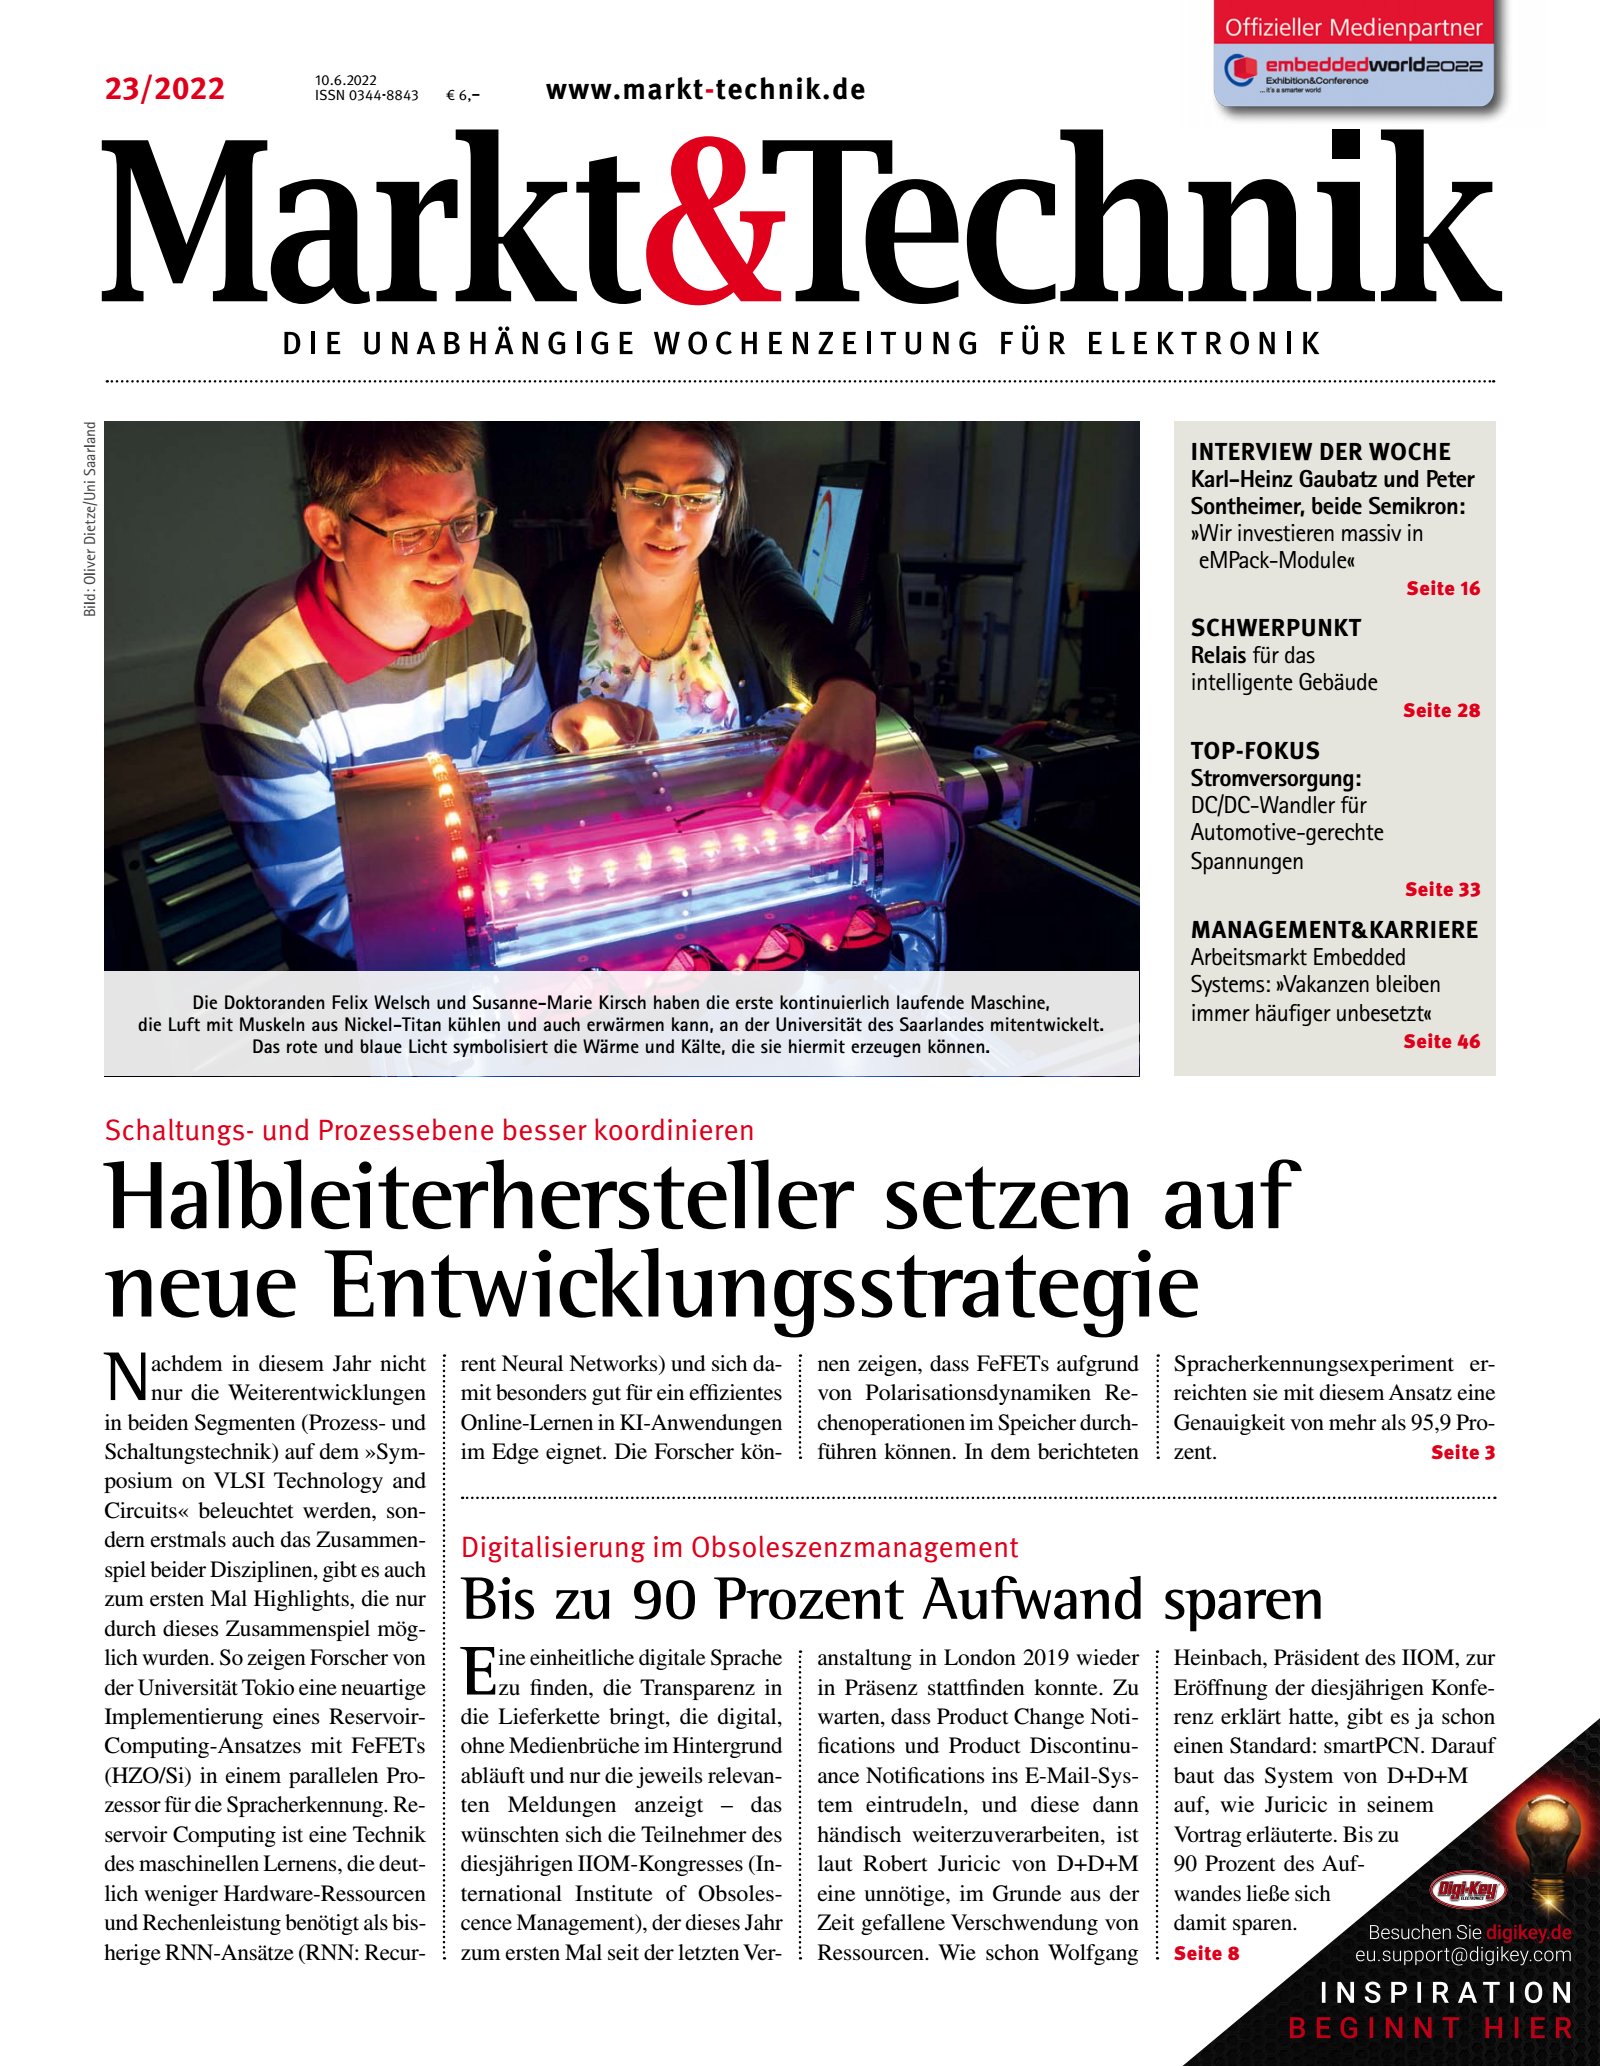 Markt&Technik 23/2022 Digital